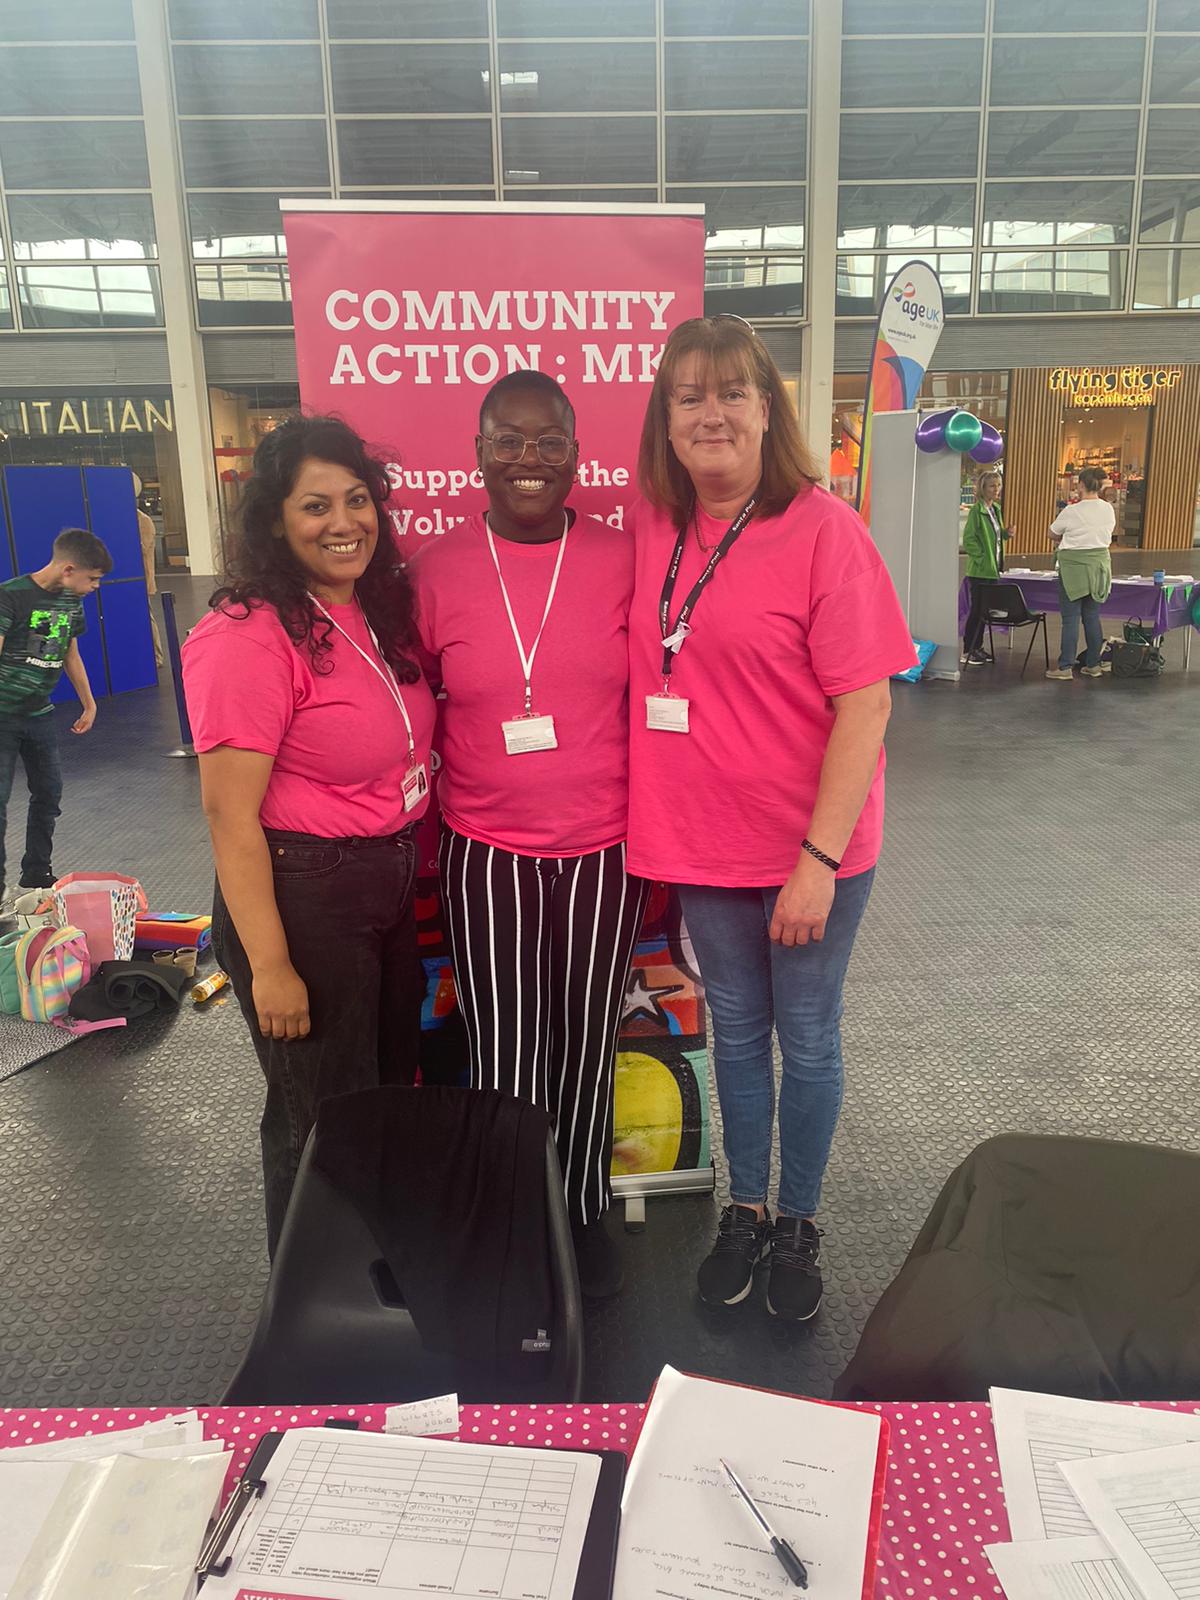 Three volunteers wearing pink T shirts